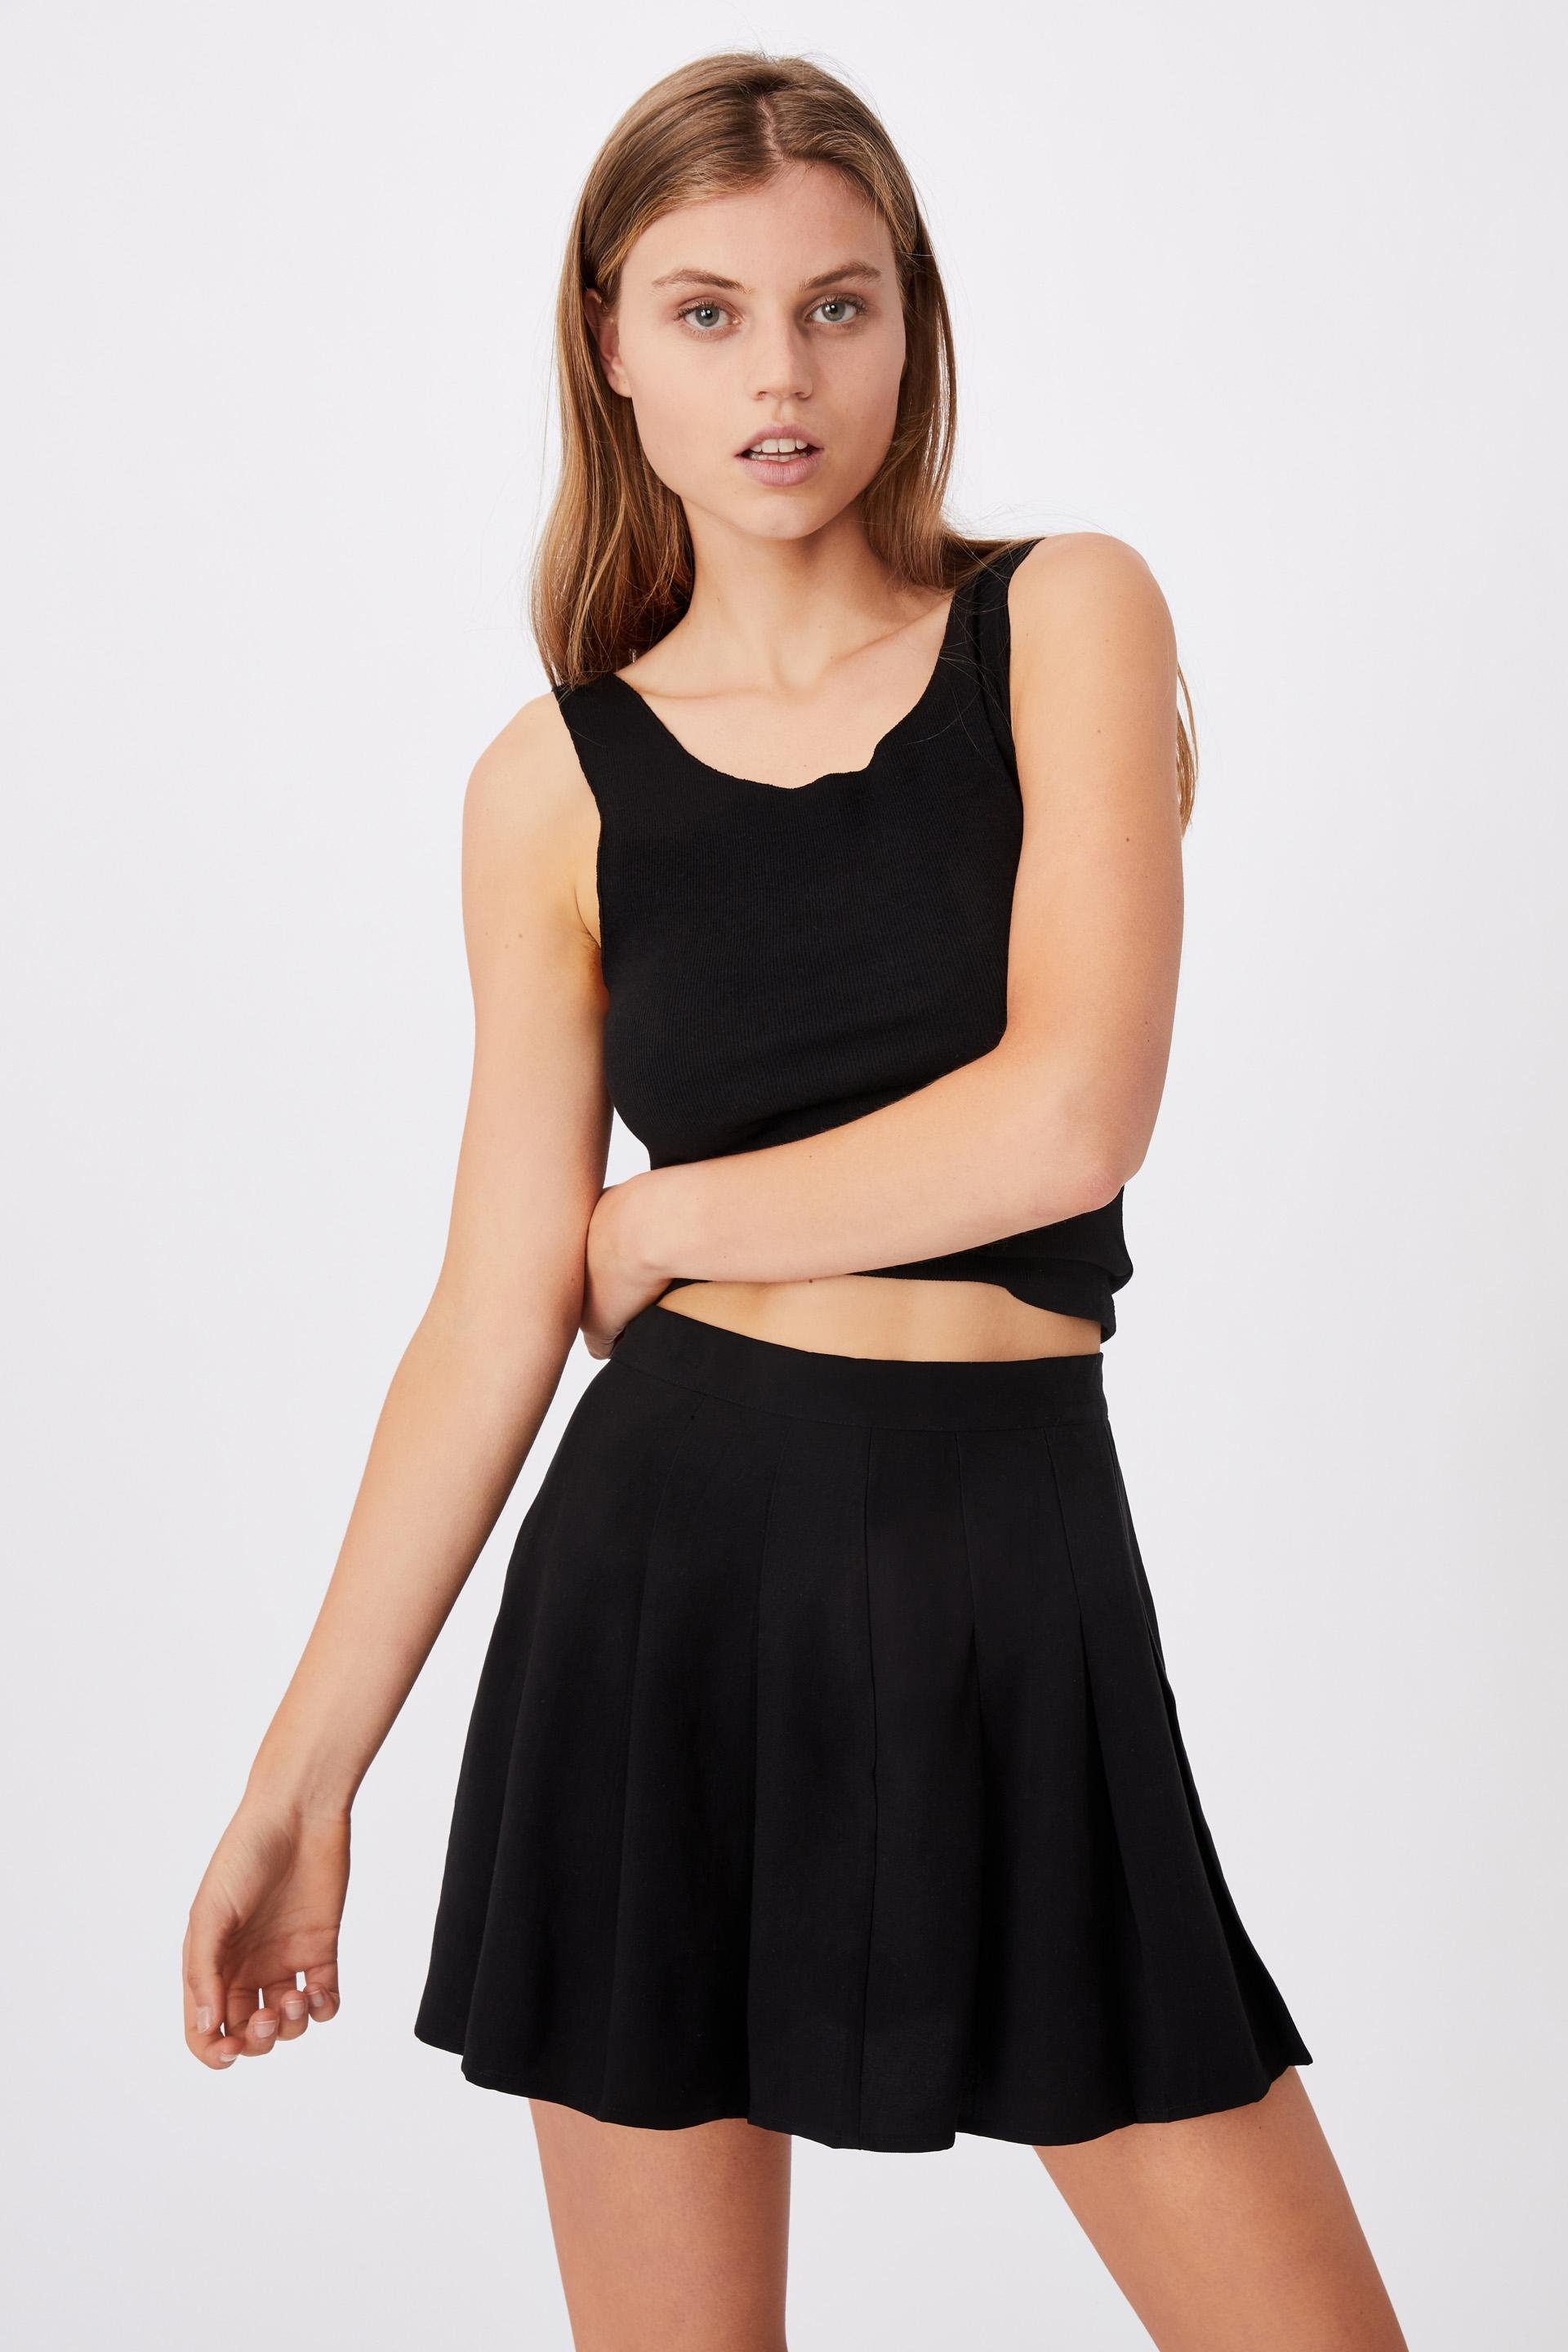 Pleated tennis mini skirt - black Cotton On Skirts | Superbalist.com